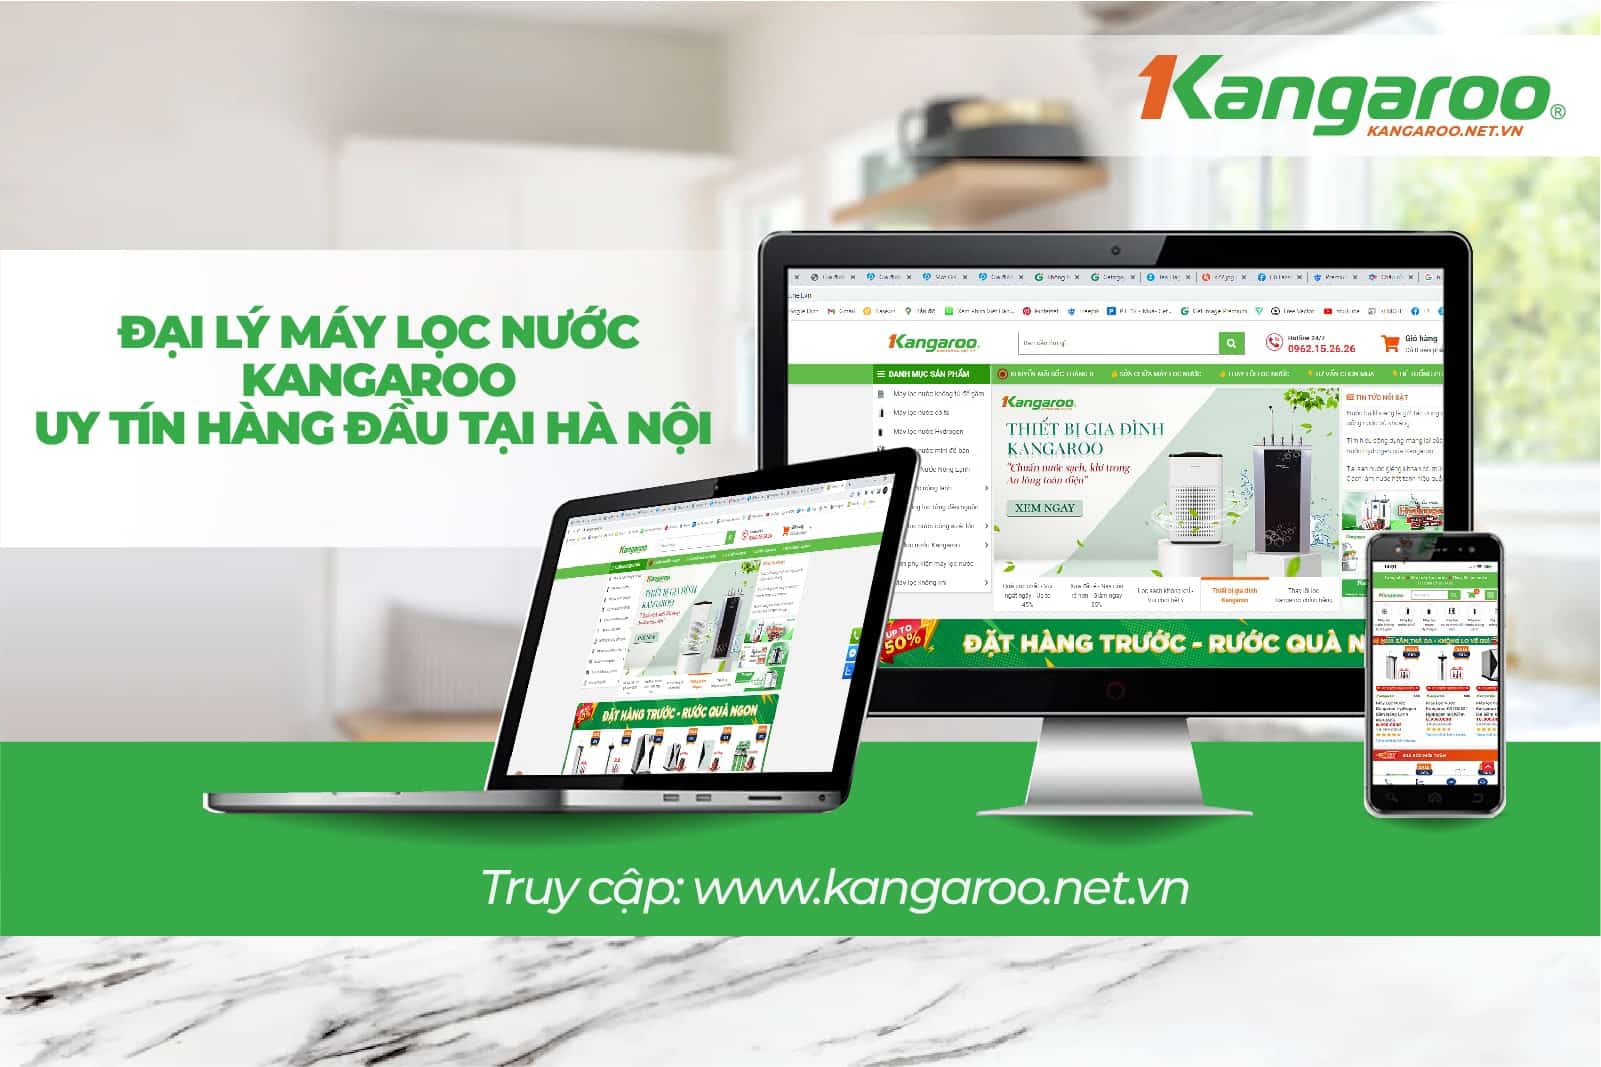 Kangaroo.net.vn là địa chỉ uy tín để bạn chọn mua model KG888 và máy lọc nước Kangaroo nói chung